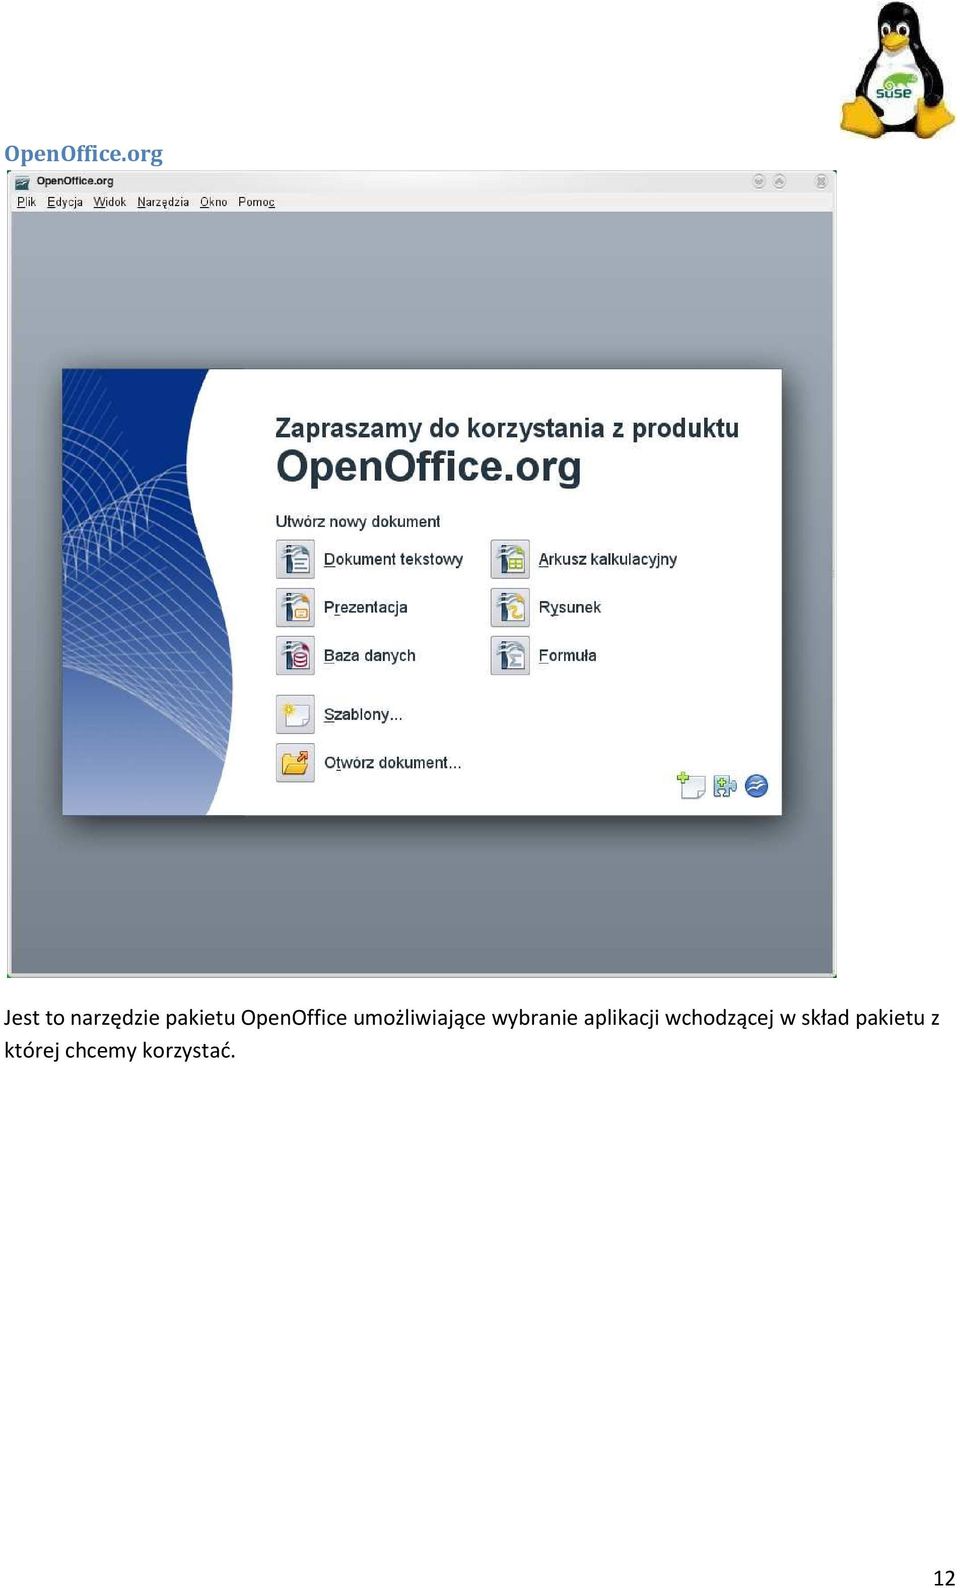 OpenOffice umożliwiające wybranie